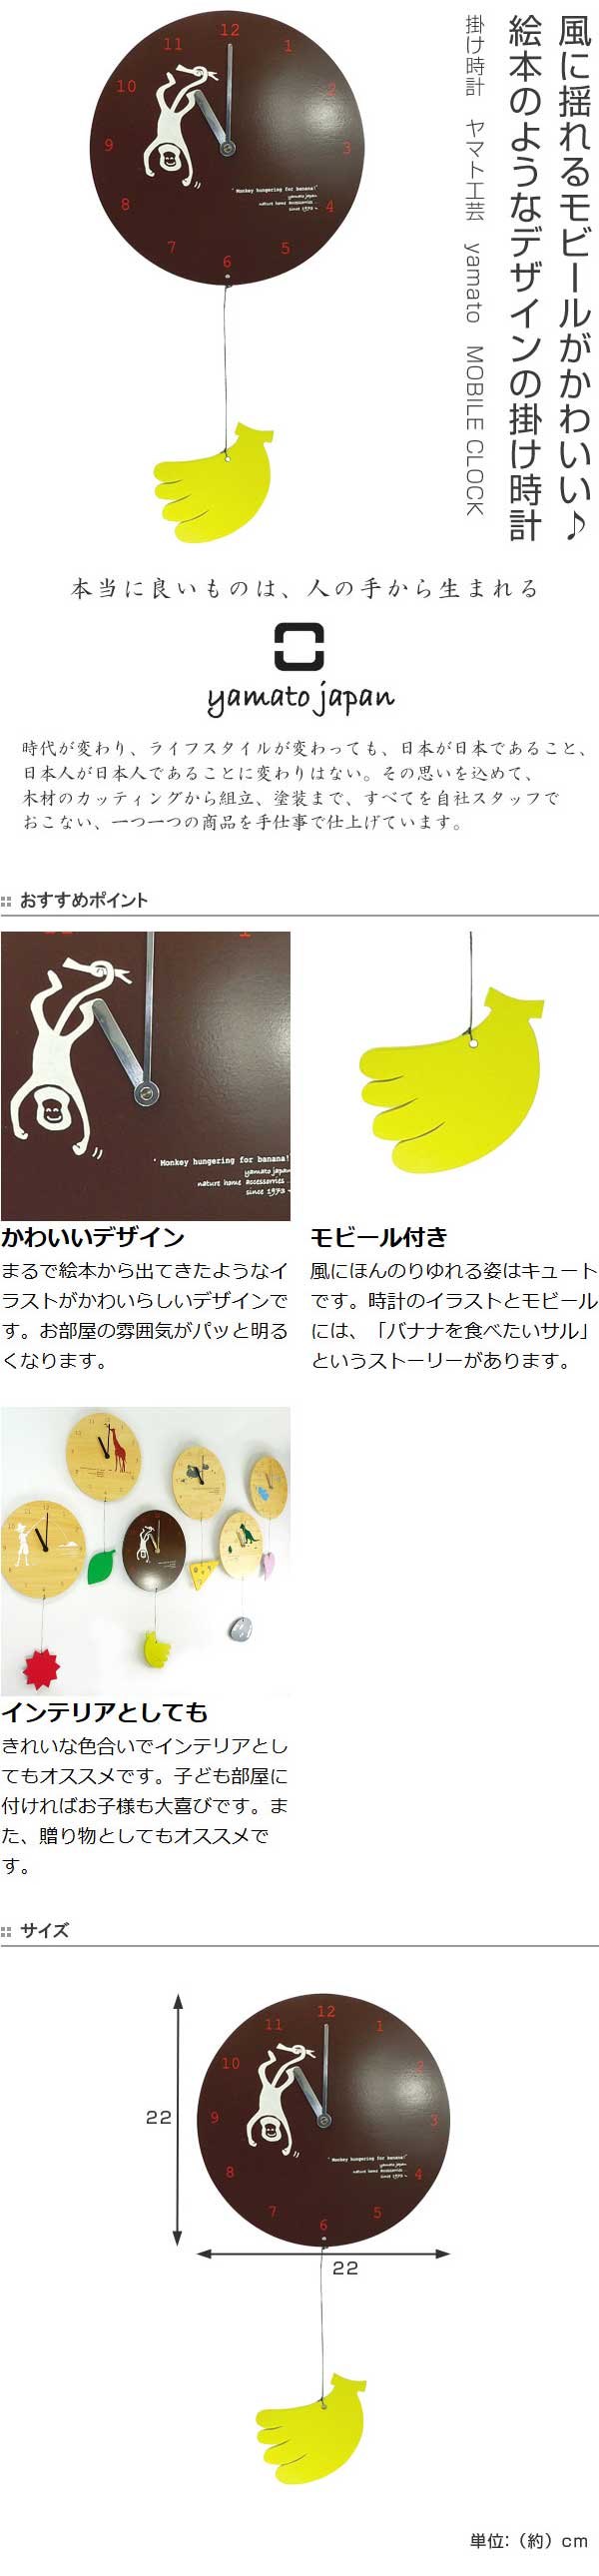 掛け時計 ヤマト工芸 Yamato Mobile Clock リビングート ポンパレモール店 ポンパレモール